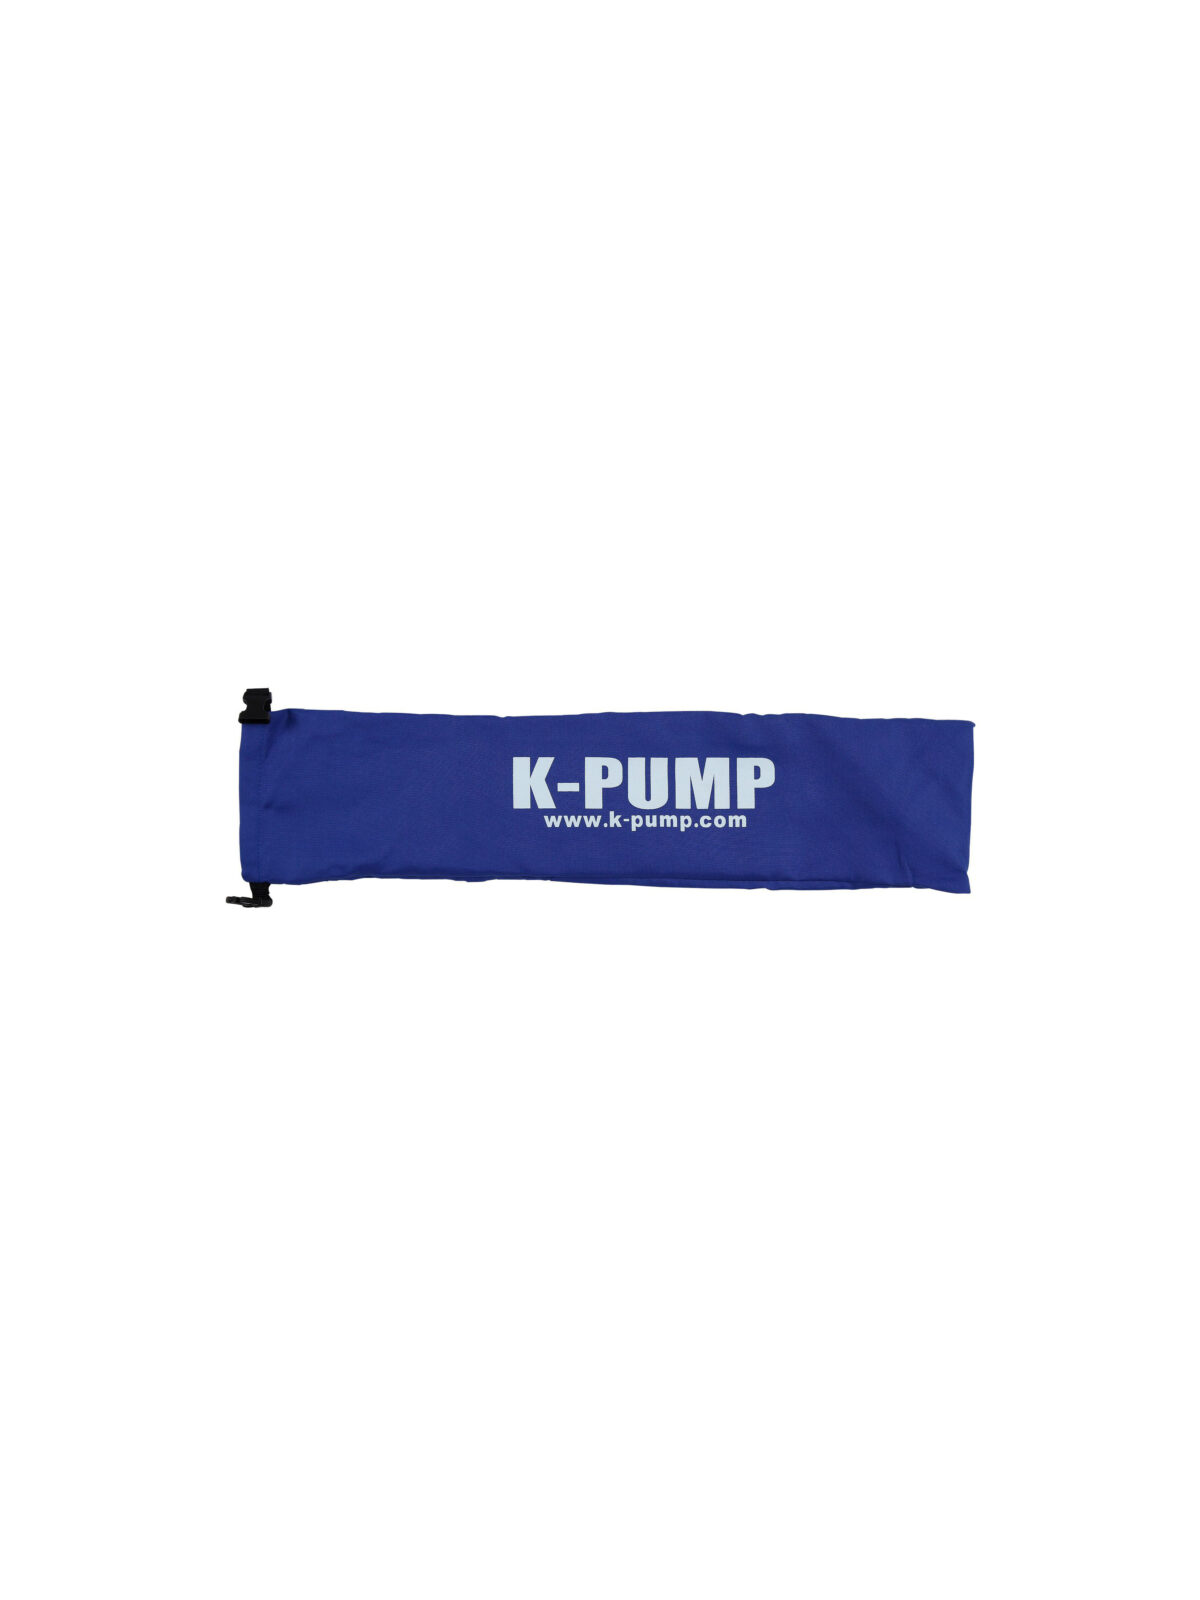 K-Pump Bag image